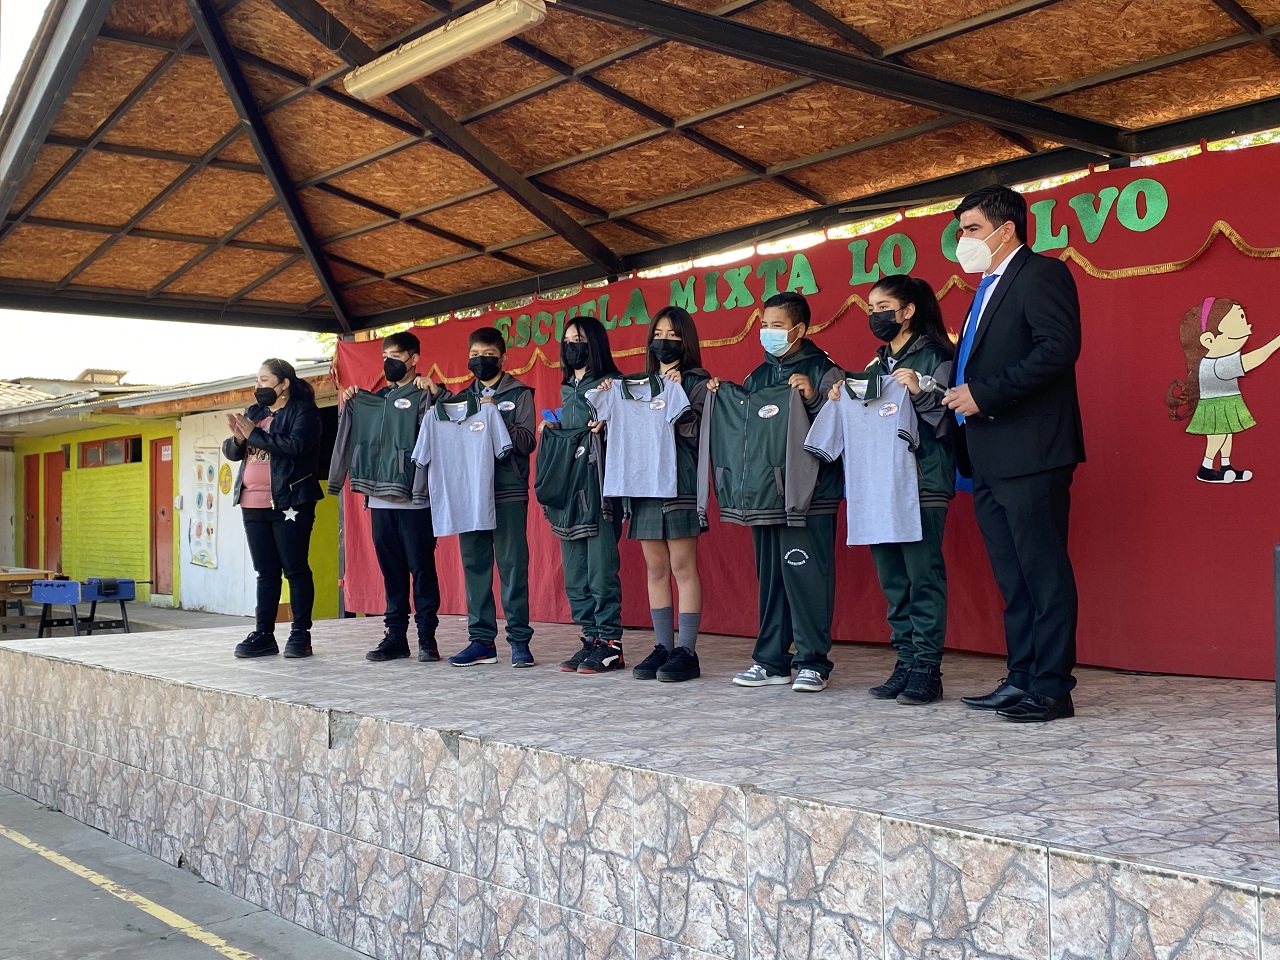 SAN ESTEBAN: Escuela Mixta Lo Calvo invirtió más de 5 millones de pesos en la compra de uniformes para todos sus alumnos